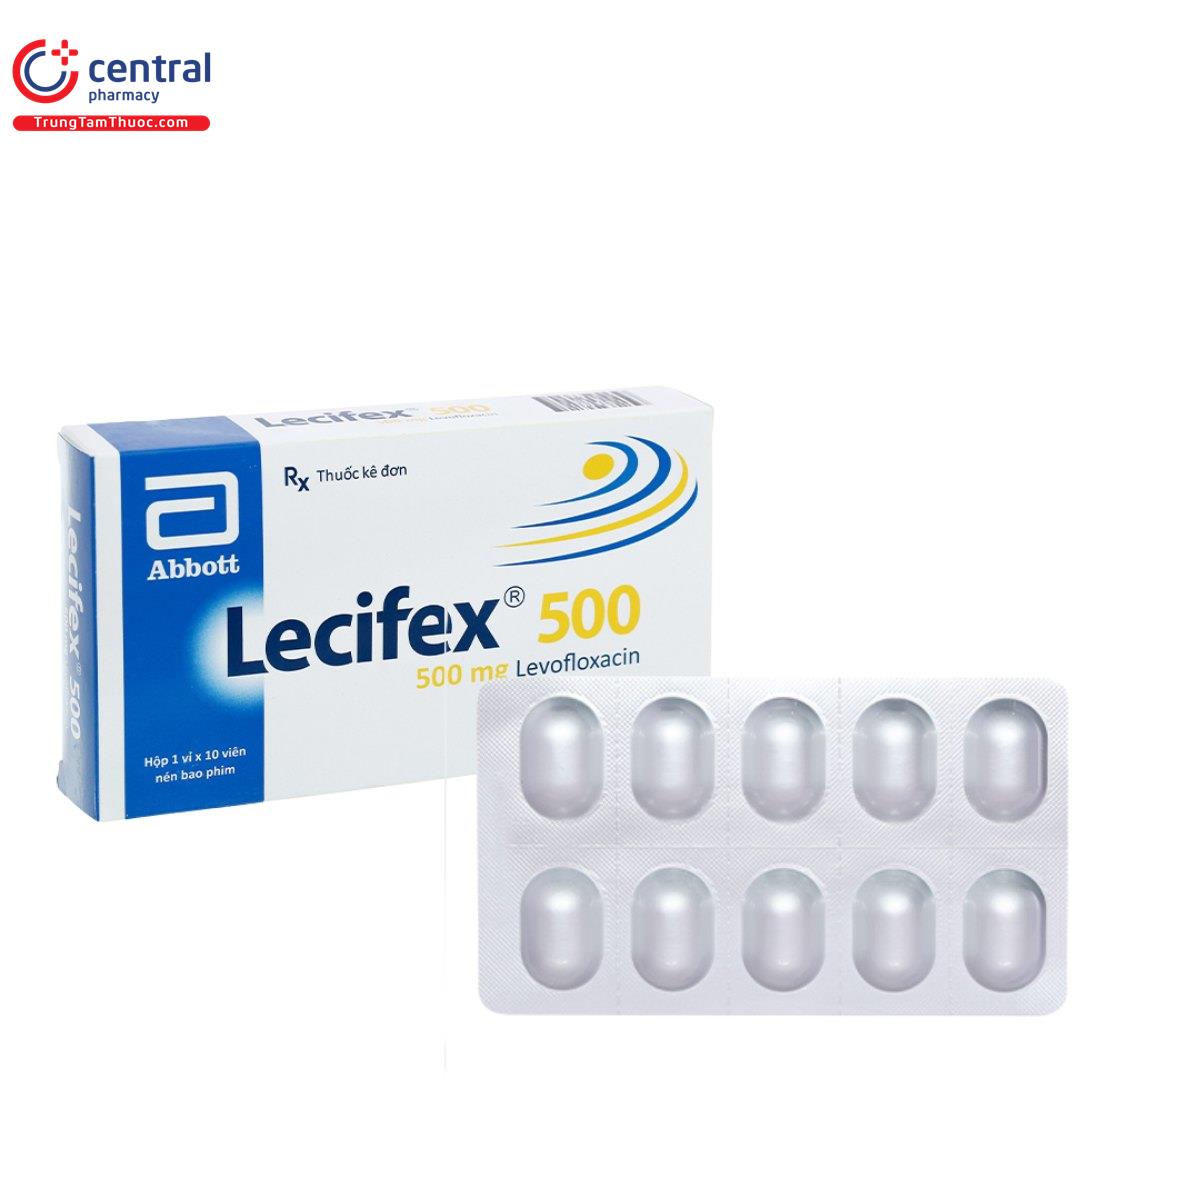 lecifex 500 2 L4800